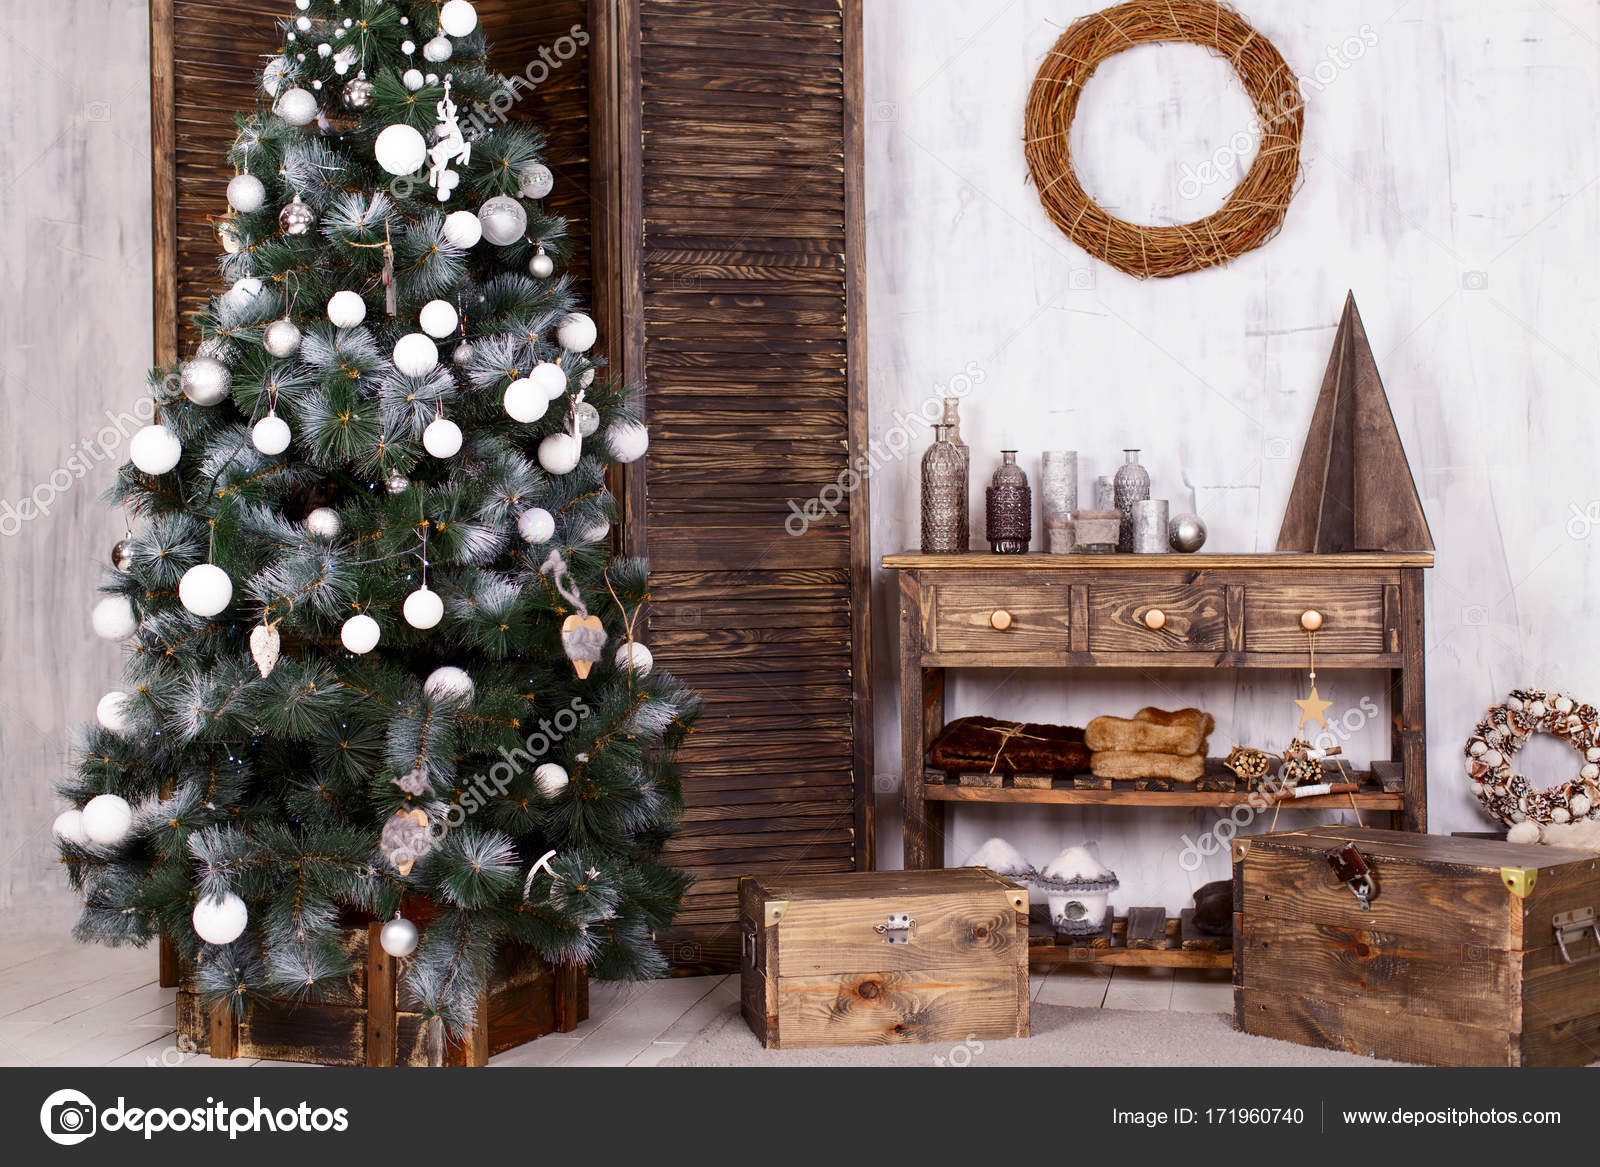 Christmas interior design — Stock Photo © OlgaPonomarenko #171960740